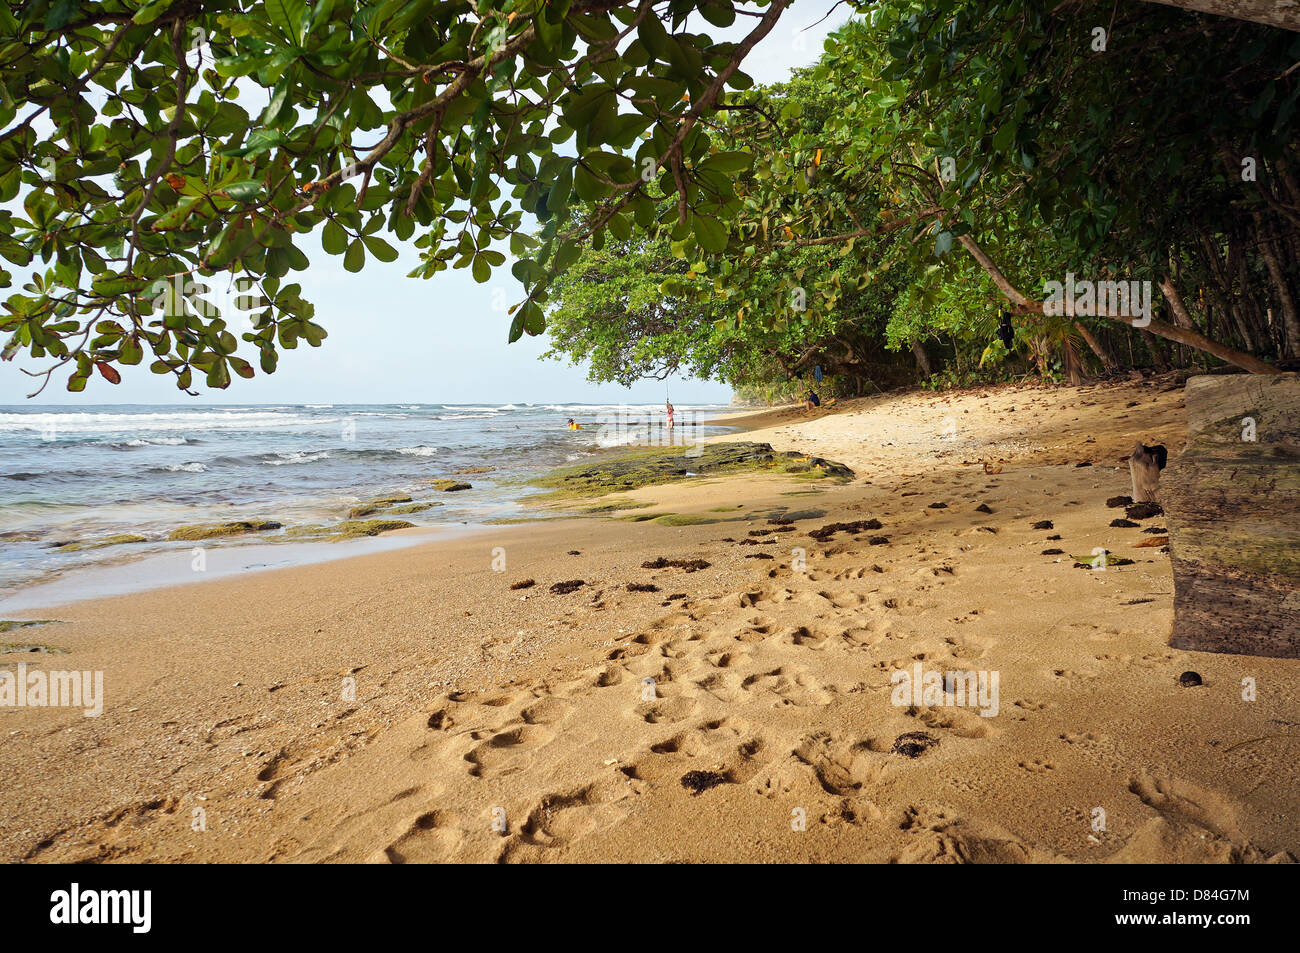 Spiaggia tropicale con vegetazione lussureggiante, Caraibi, Manzanillo, Costa Rica Foto Stock